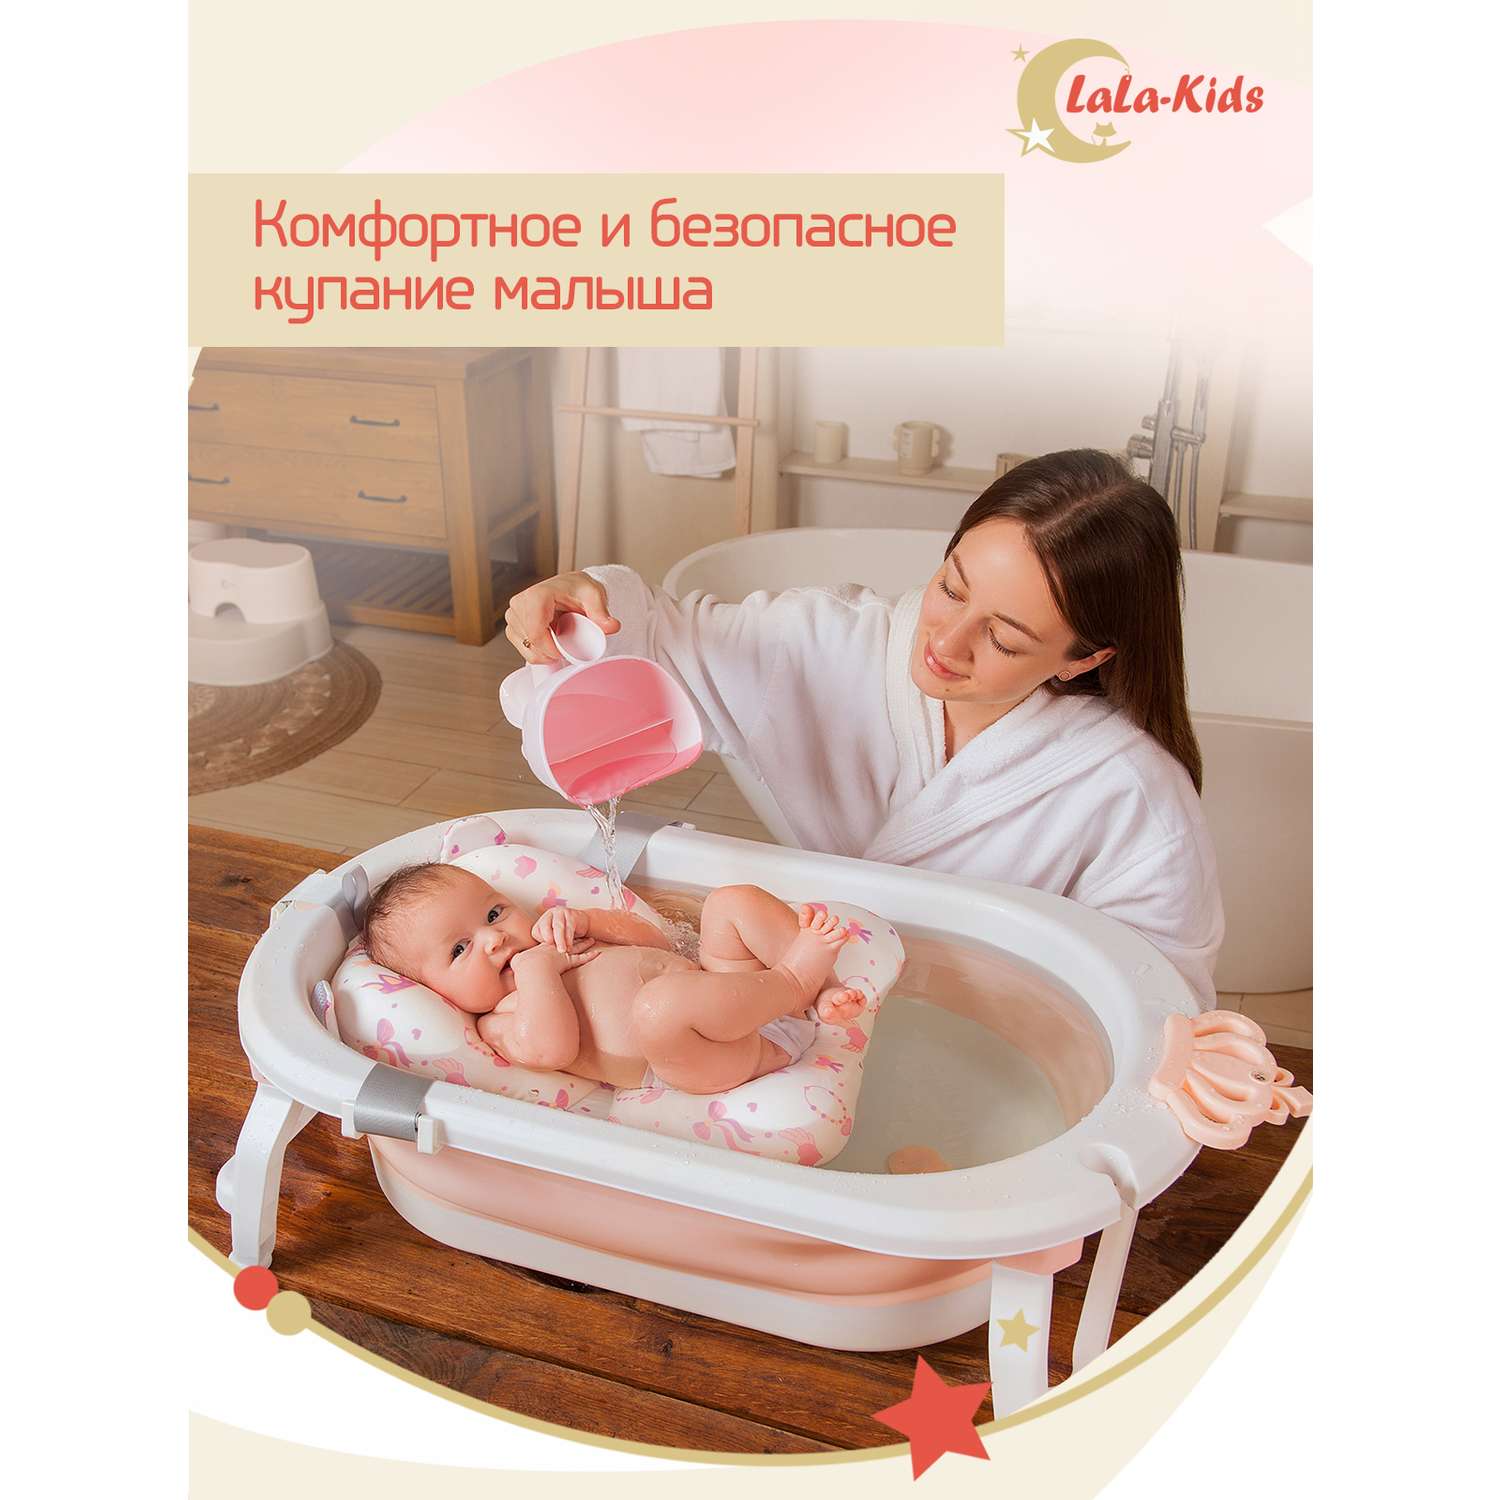 Ванночка для новорожденных LaLa-Kids складная с матрасиком и термометром в комплекте - фото 3